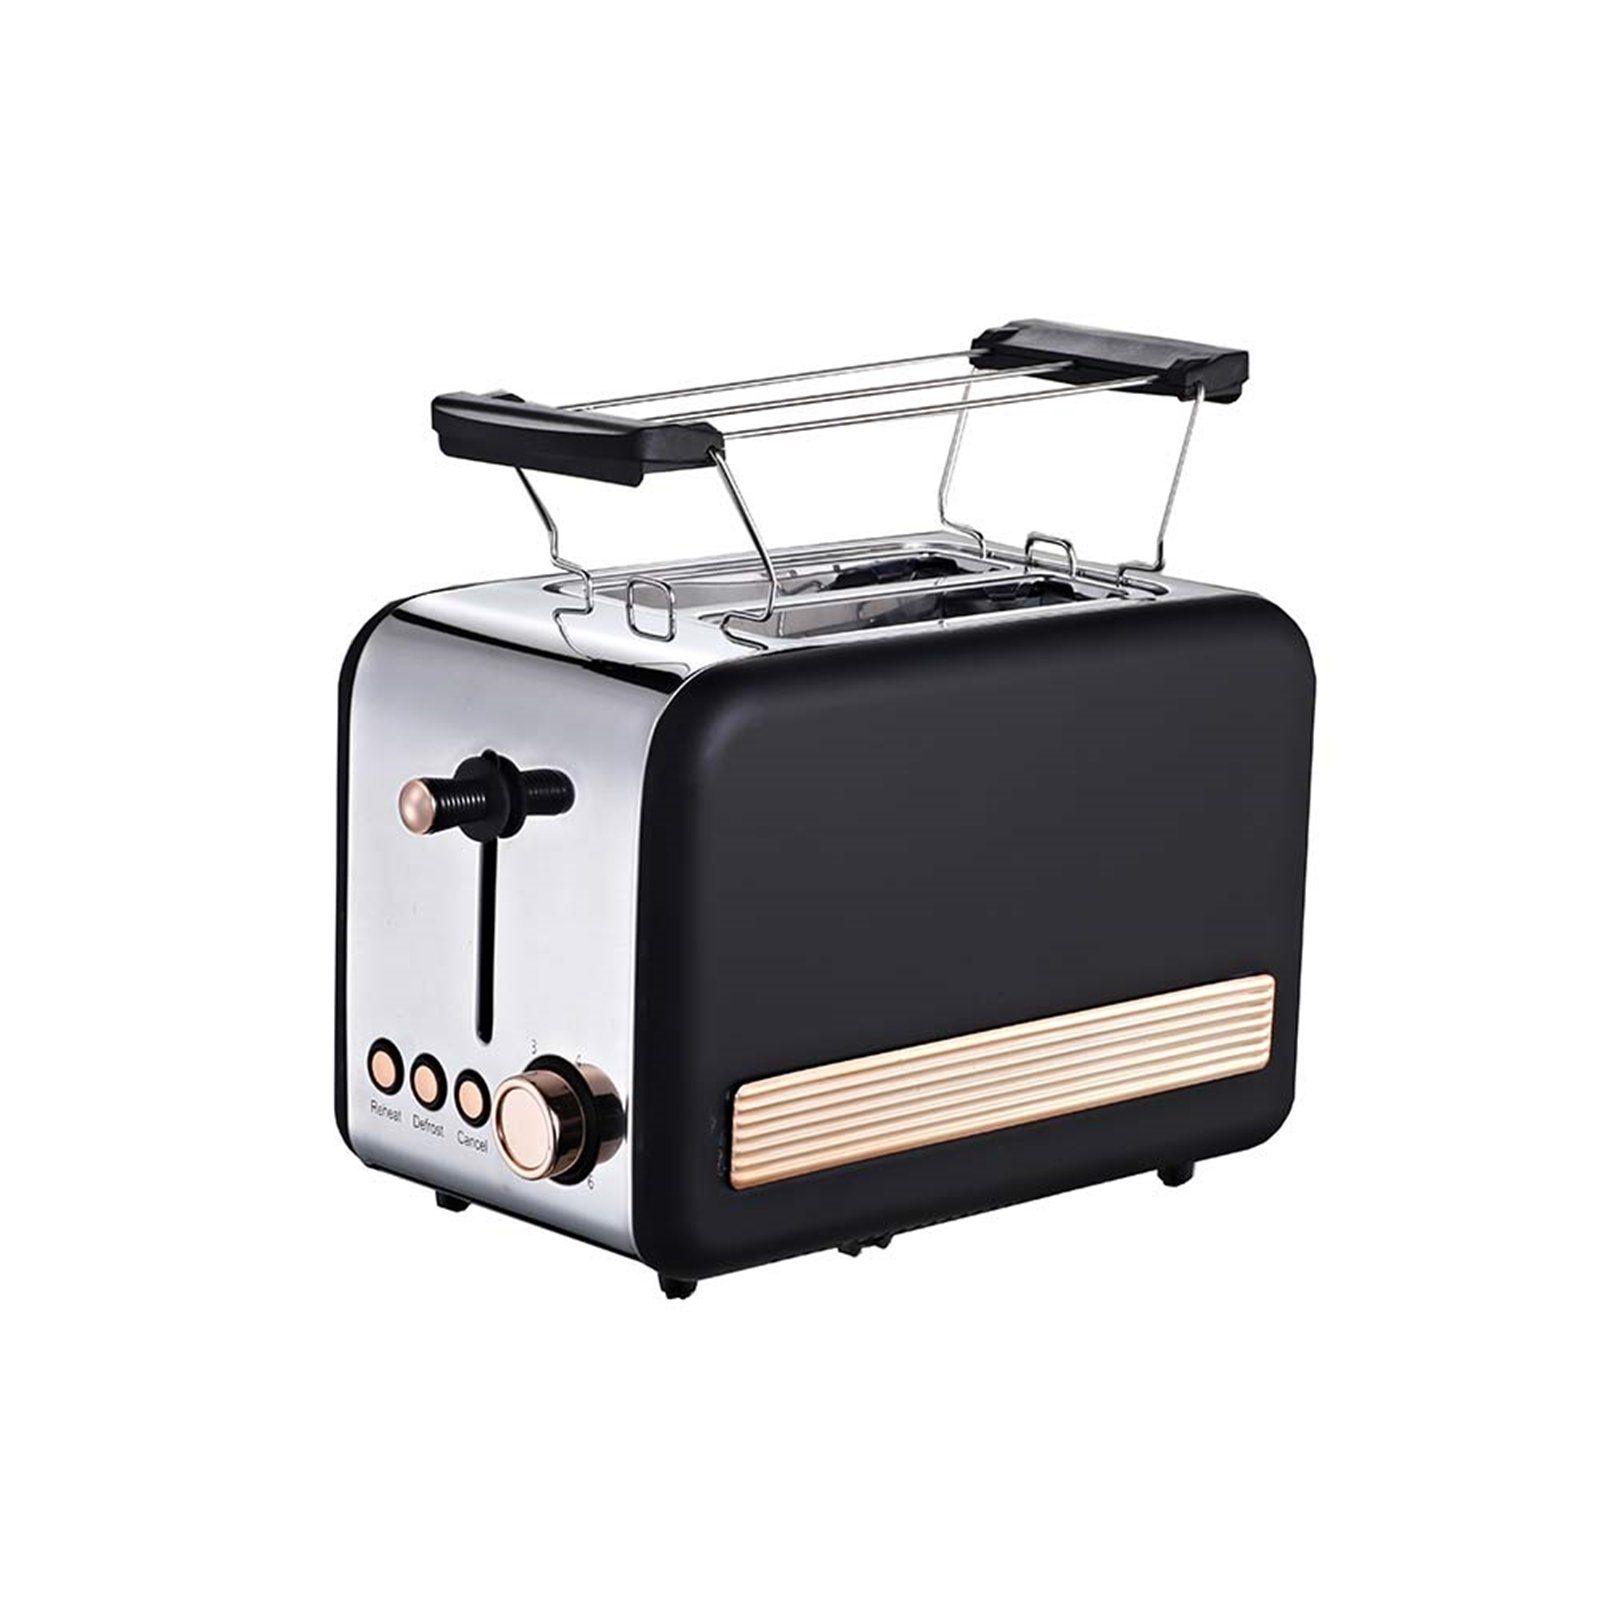 Scheiben Toaster Toaster W Deluxe Michelino 2 850 Retro,